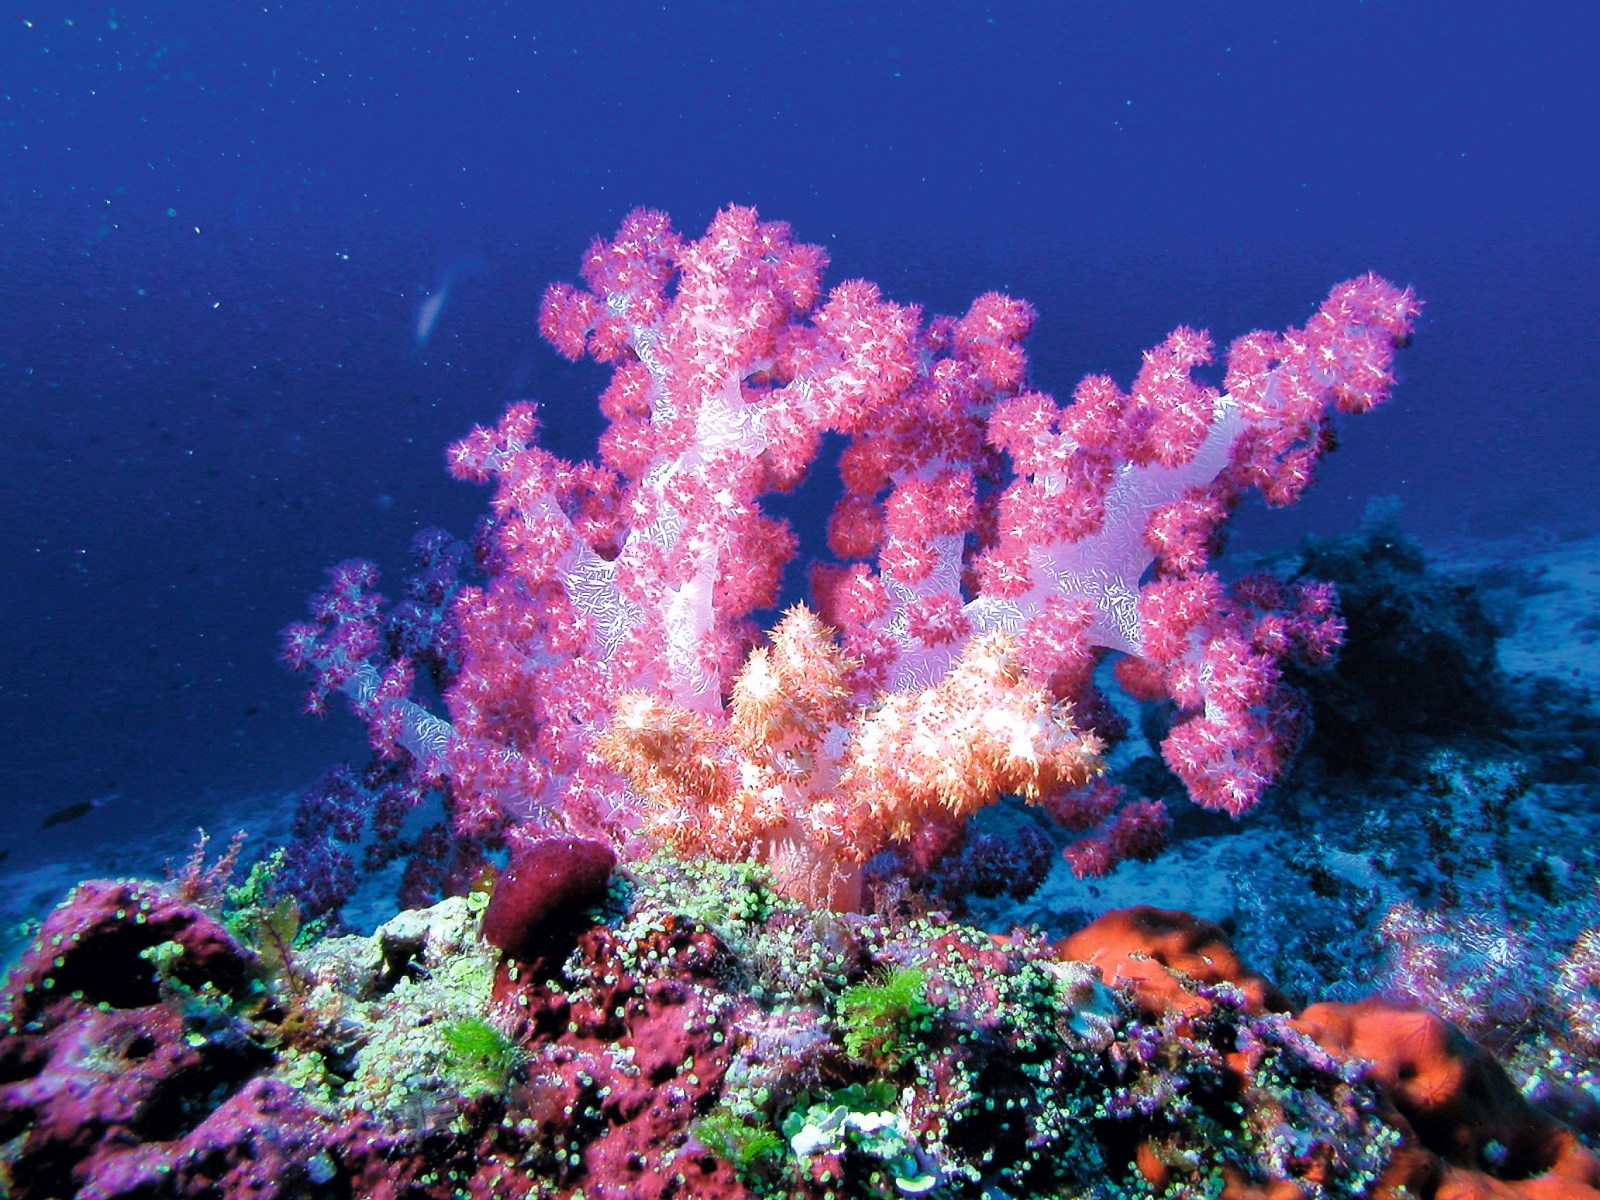 Corals in the Indian Ocean